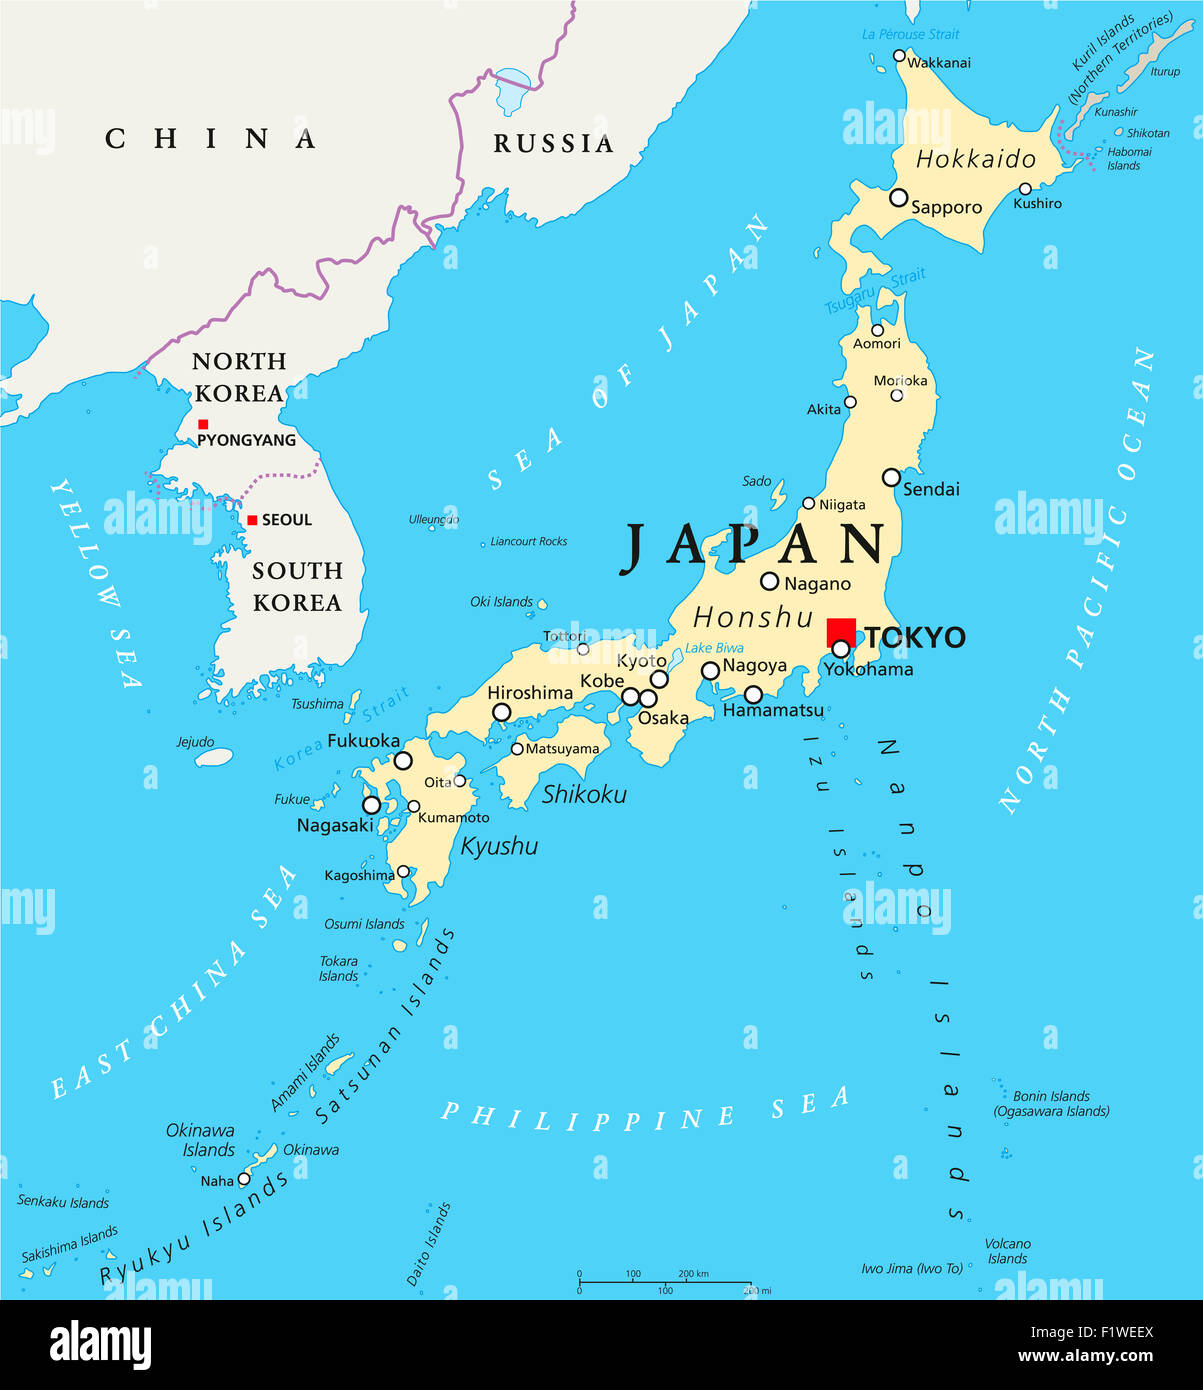 Conception D'illustration D'une Carte Du Japon Avec La Capitale De Tokyo,  Pays Du Japon